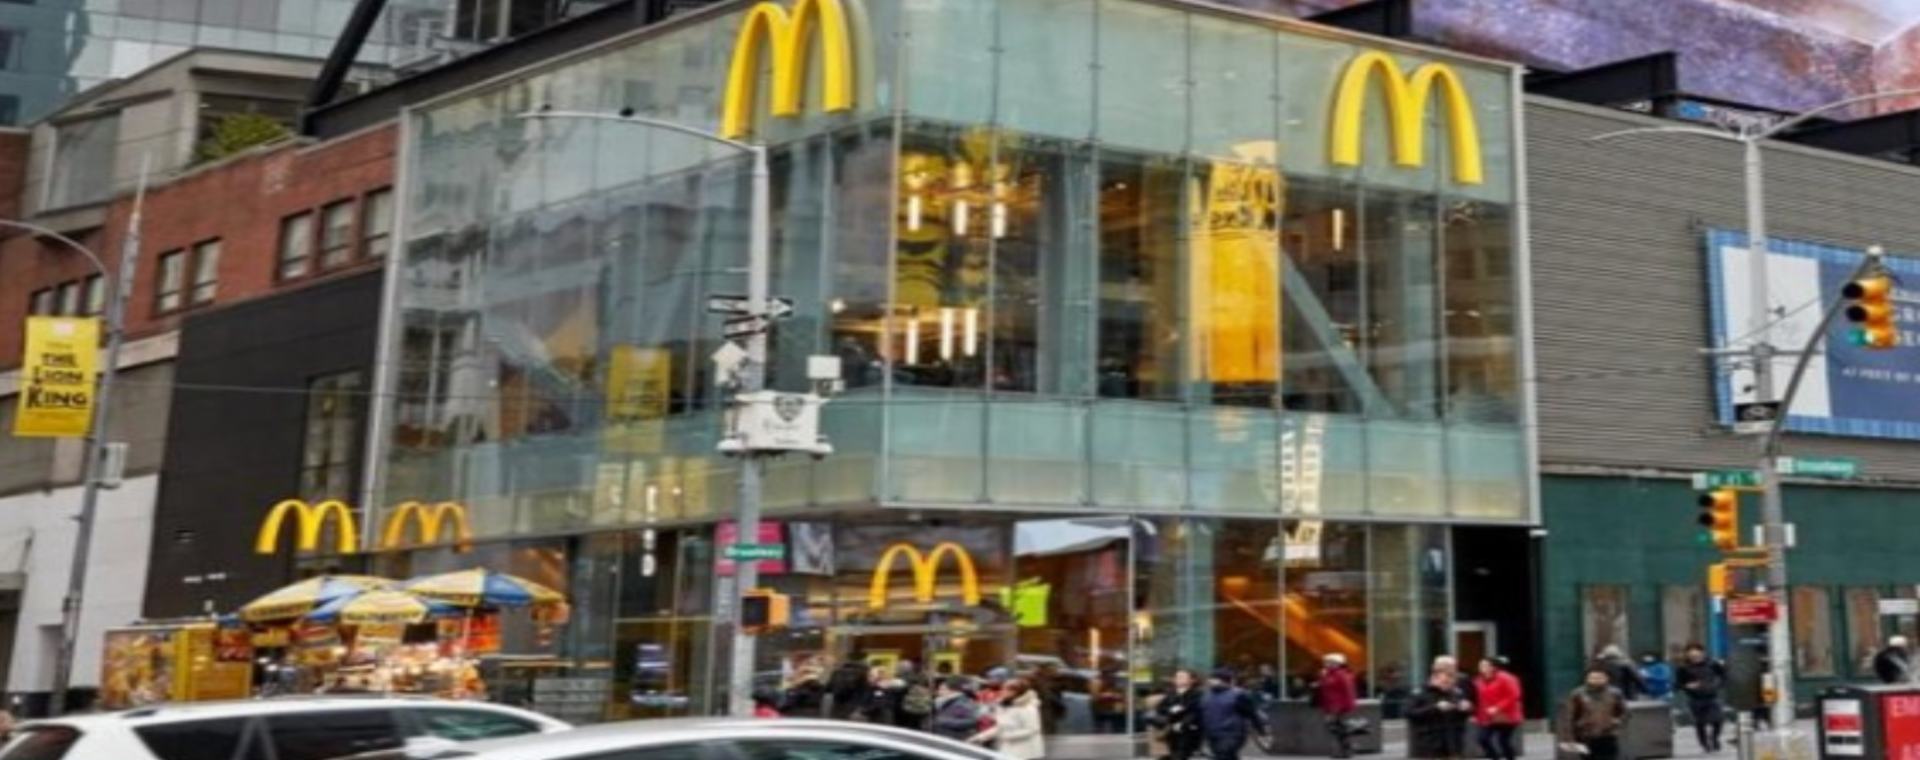 Perusahaan waralaba Amerika Serikat (AS) McDonalds menutup semua restoran dan menghentikan sementara semua operasi di Rusia. Keputusan ini menyusul invasi Rusia atas Ukraina yang sudah berlangsung dua pekan. - mcdonalds.com